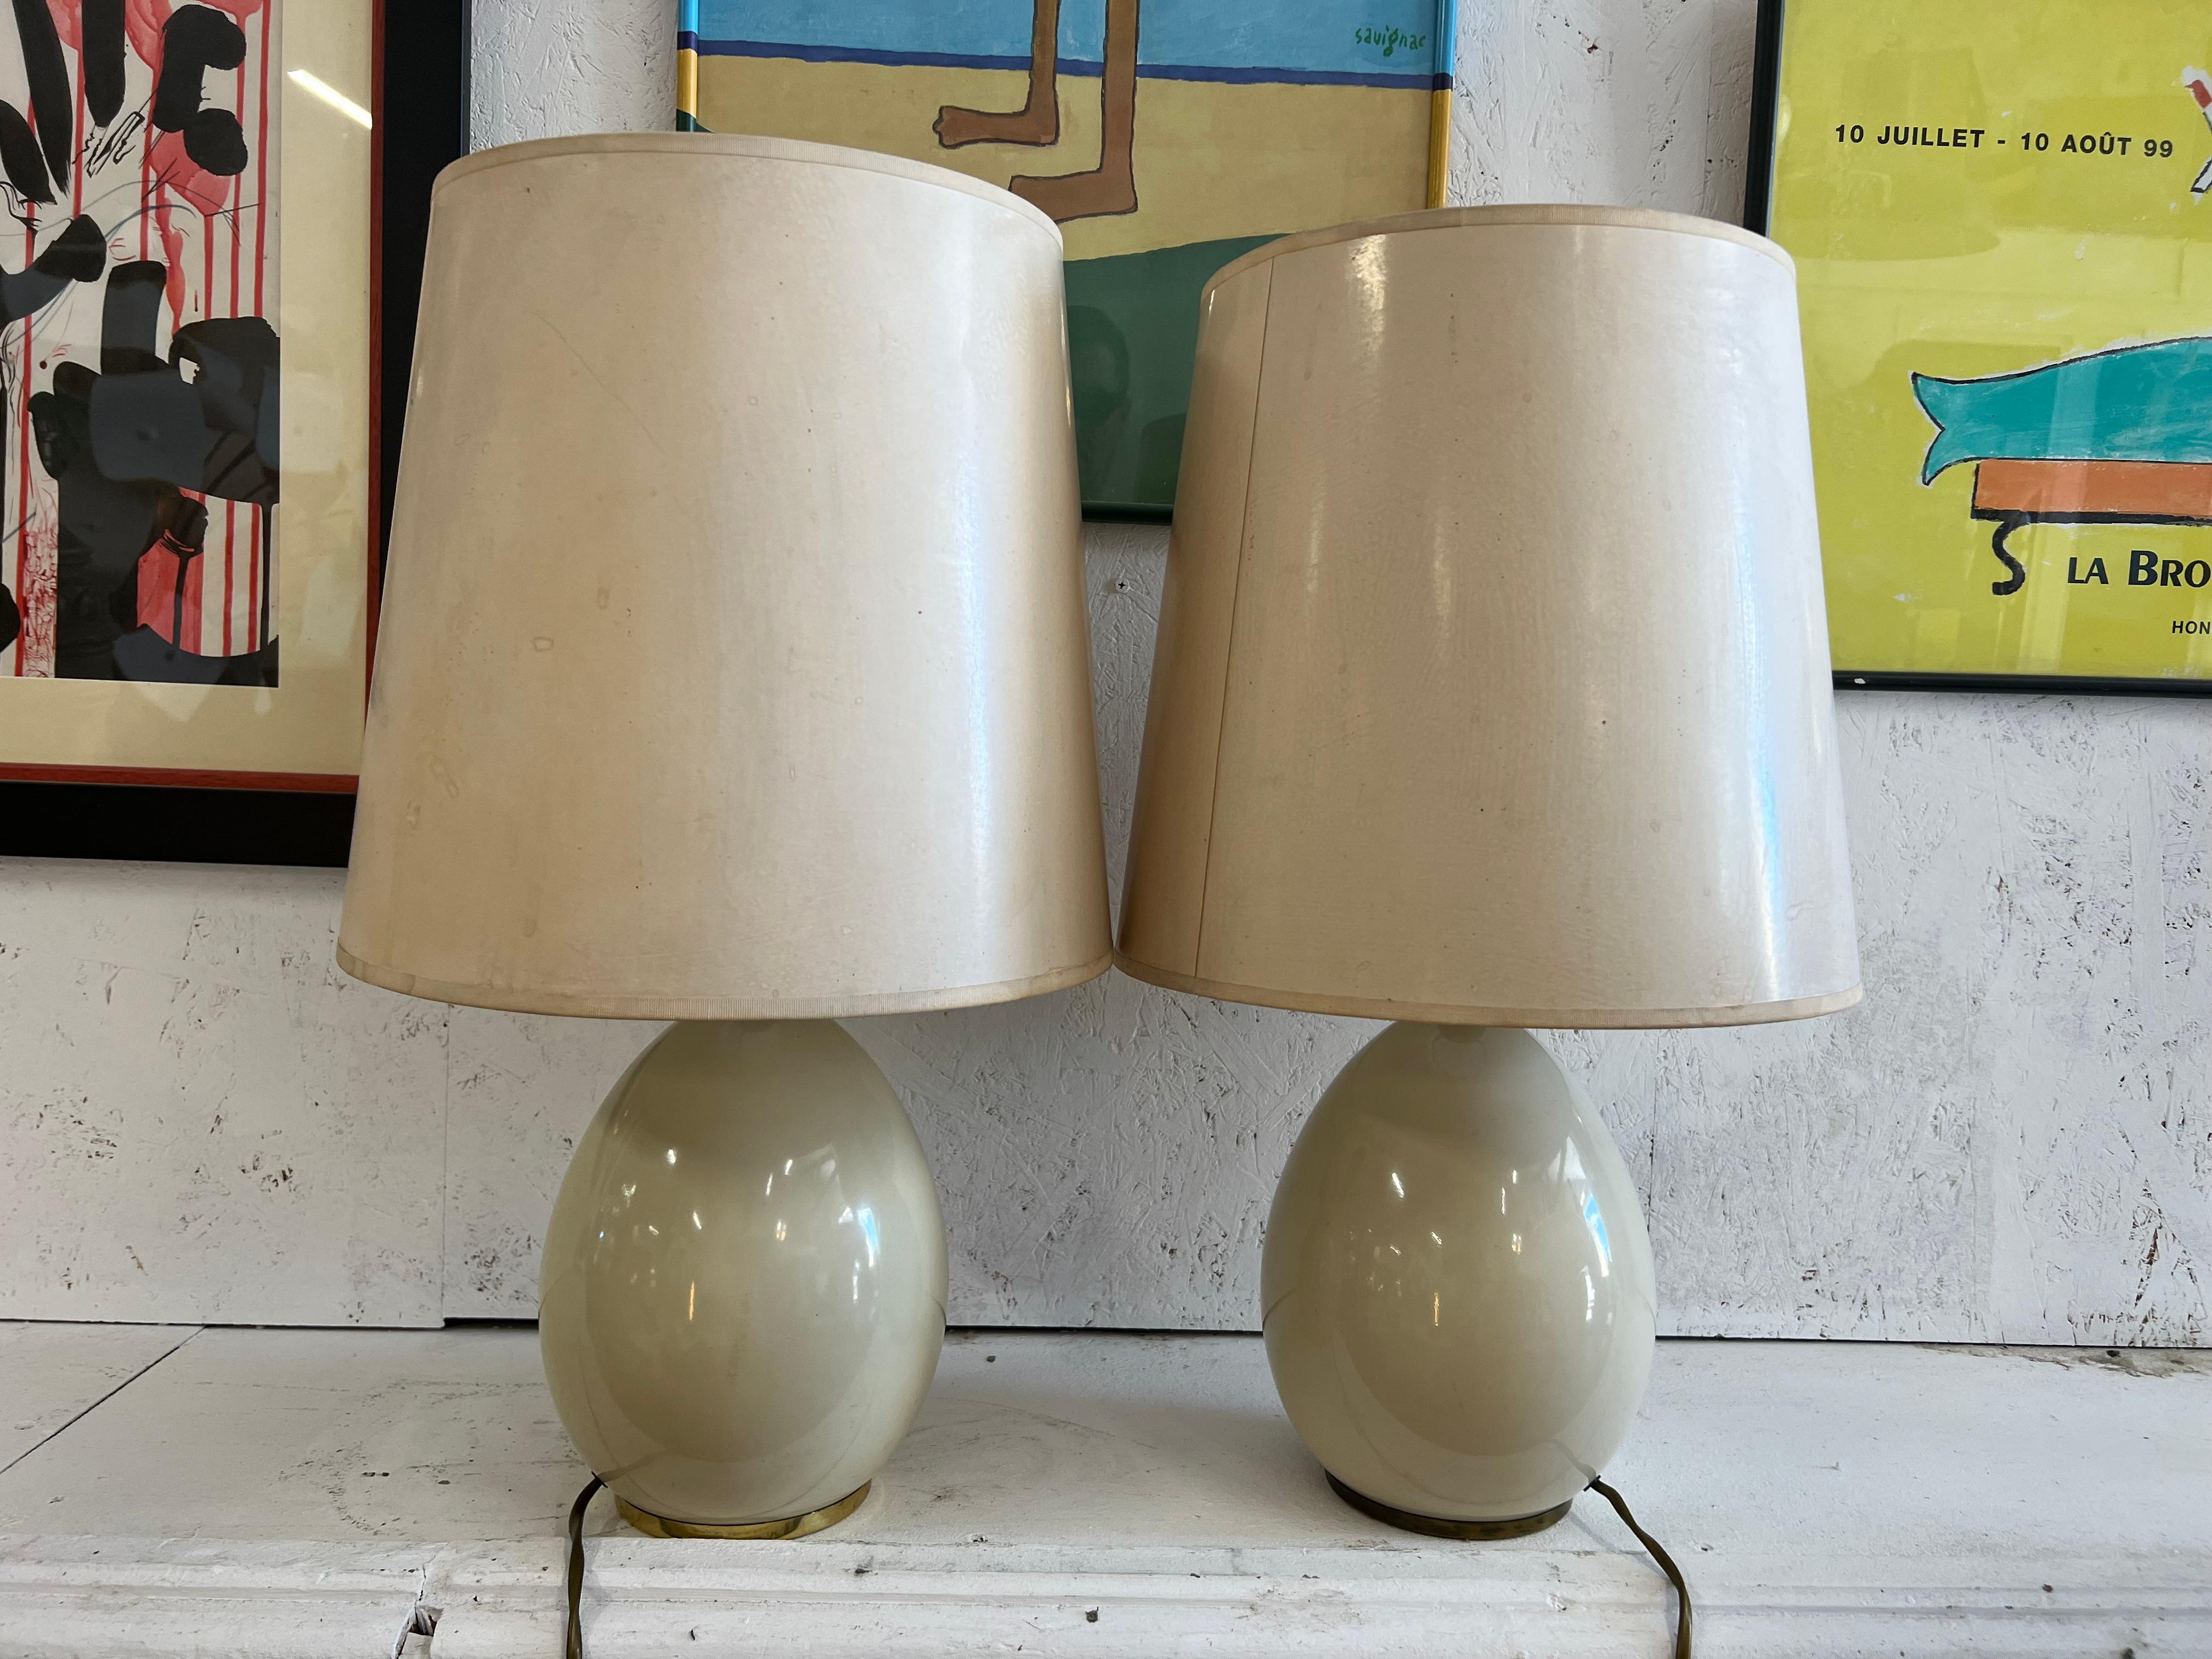 très jolie paire de lampes en céramique ivoire en forme d'oeuf avec leur abat-jour d'origine
ils sont typiques des années 50 de la marque Studio Paf Italy, la forme ovoïde rend l'objet très tactile et décoratif

